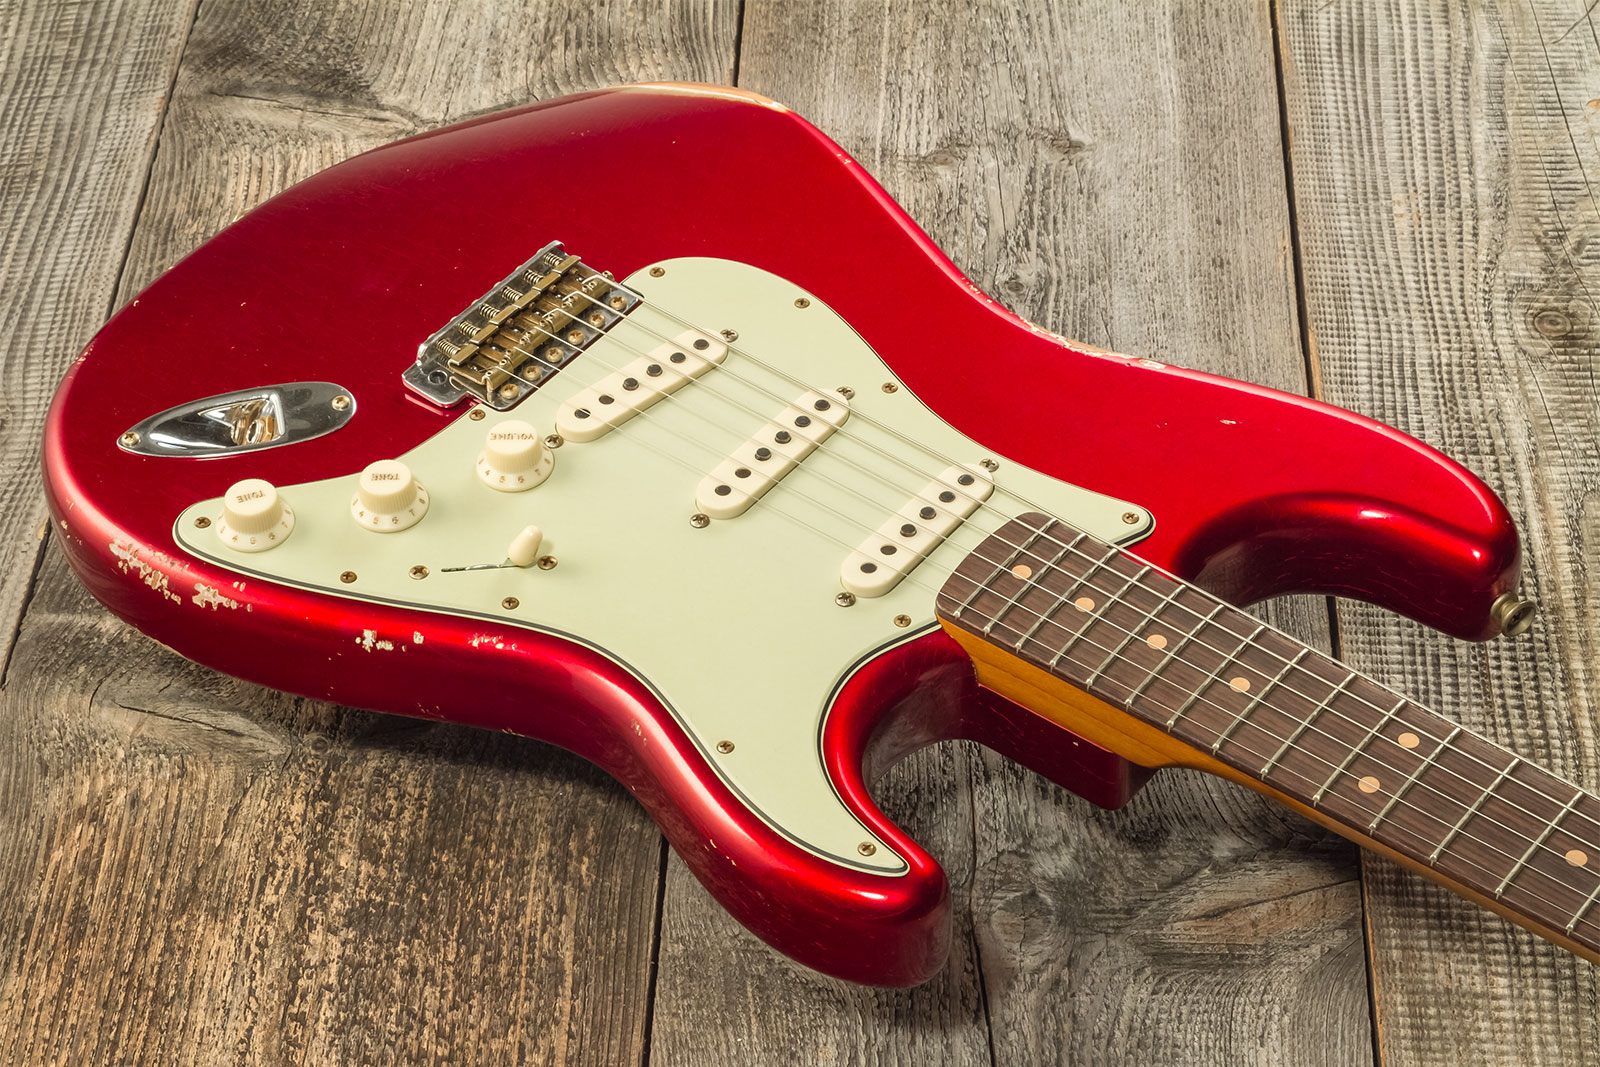 Fender Custom Shop Strat 1963 3s Trem Rw #cz579406 - Relic Aged Candy Apple Red - Elektrische gitaar in Str-vorm - Variation 2